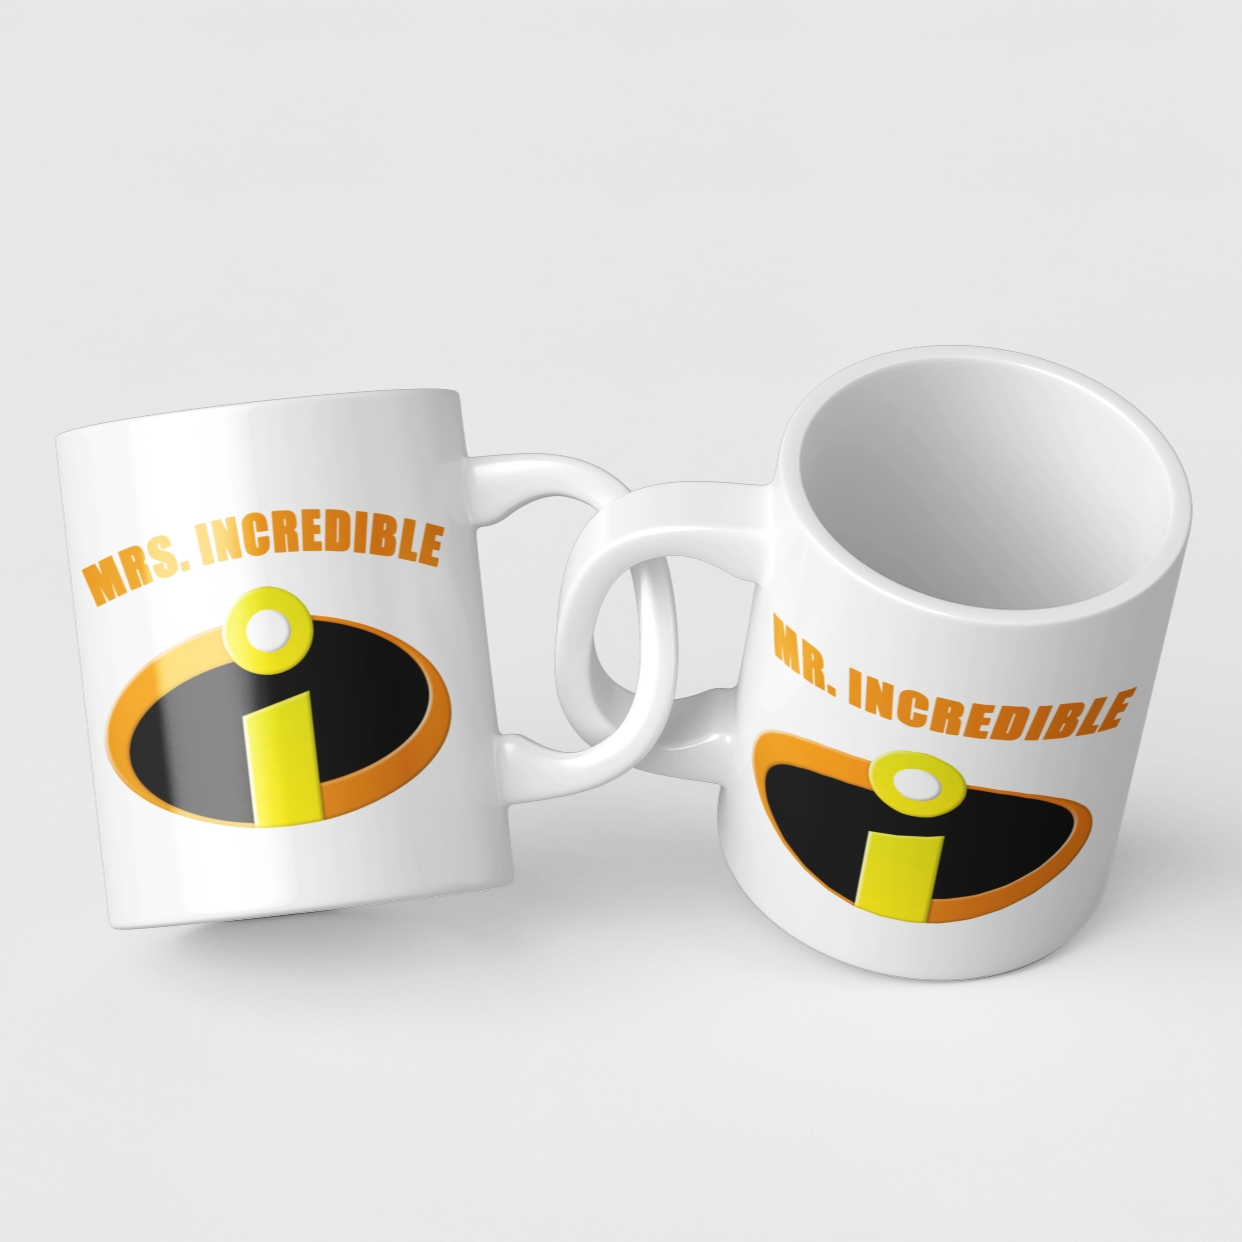 Mr & Mrs Incredible Logo Mug Colourfull Couples Mug Set Wedding Mug Couples Gift Set